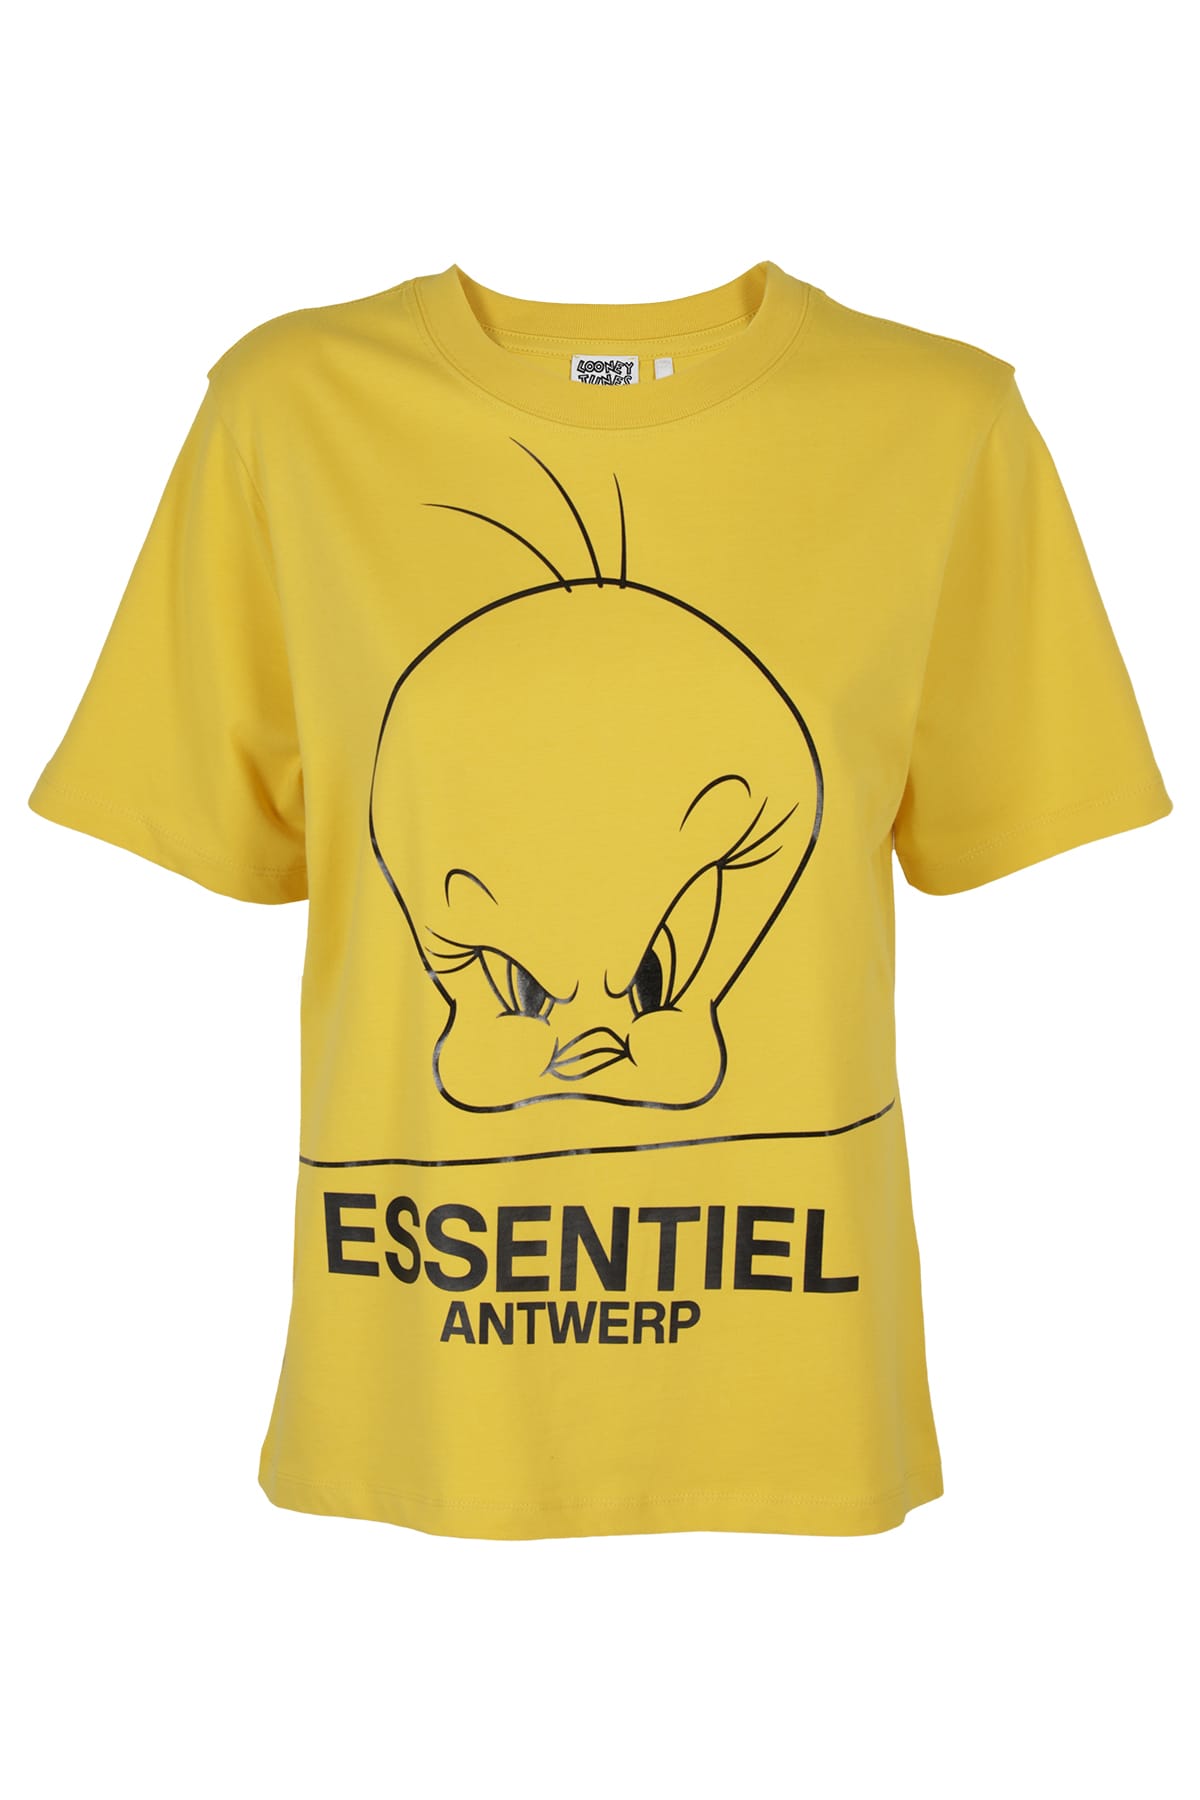 Essentiel Antwerp T-SHIRT